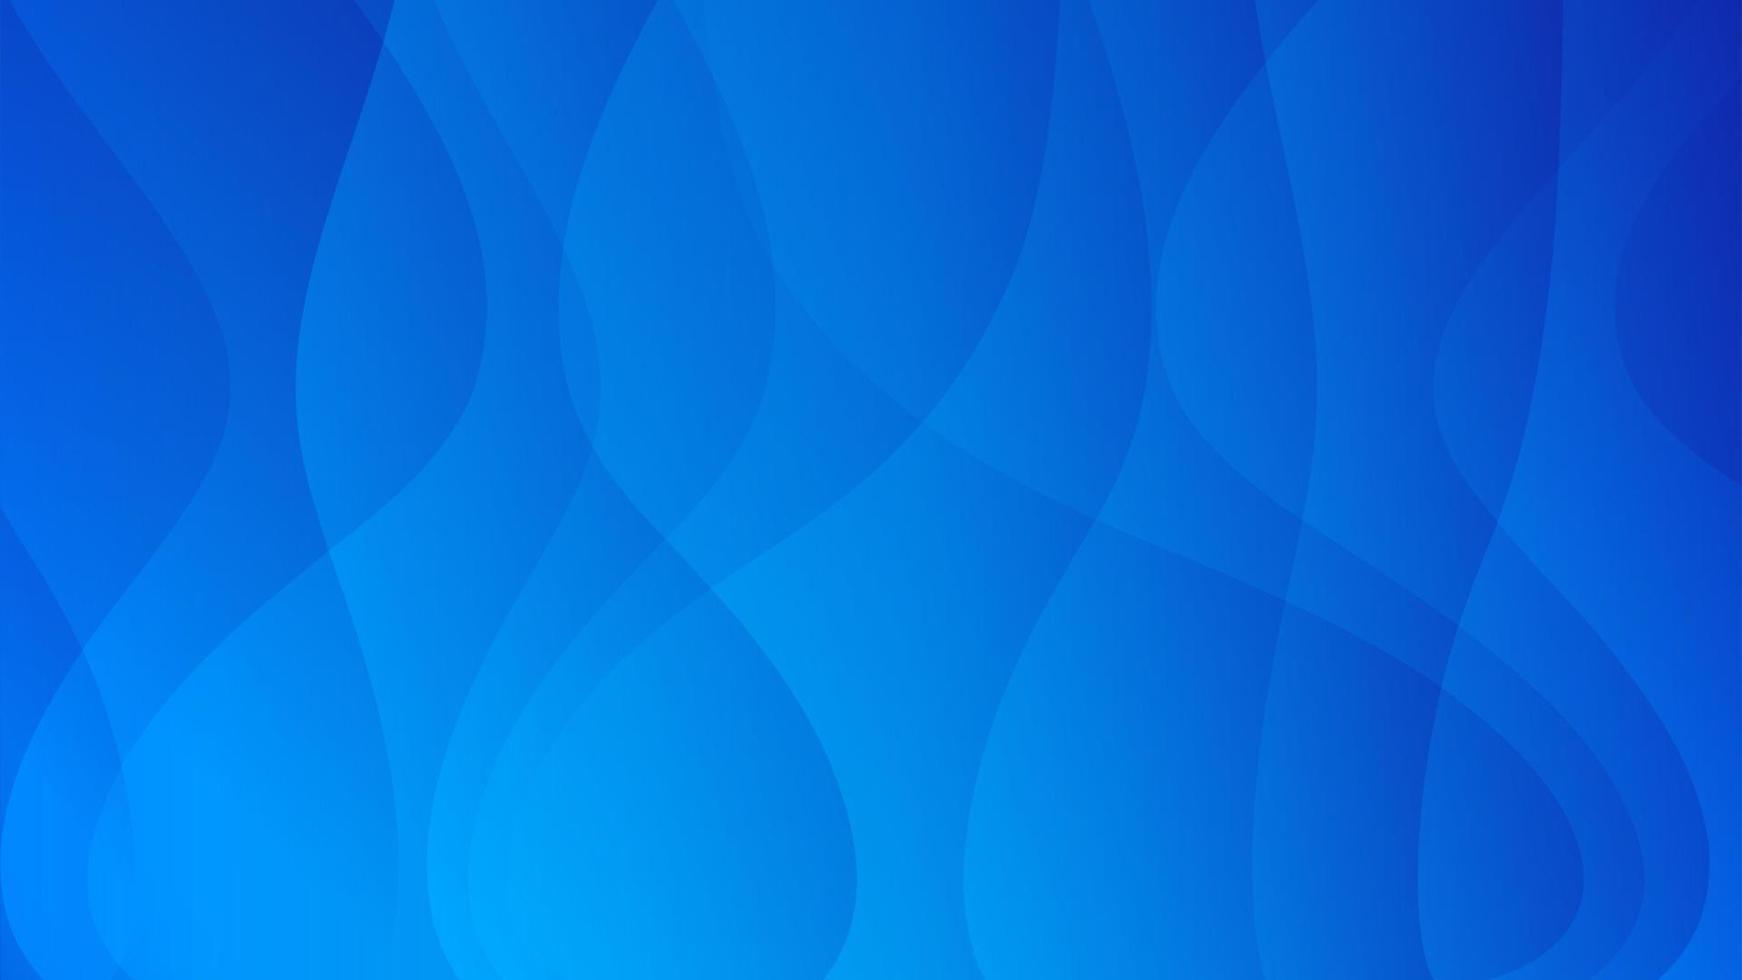 fondo abstracto de onda azul, fondo web, textura azul, diseño de banner, diseño de portada creativa, telón de fondo, fondo mínimo, ilustración vectorial vector